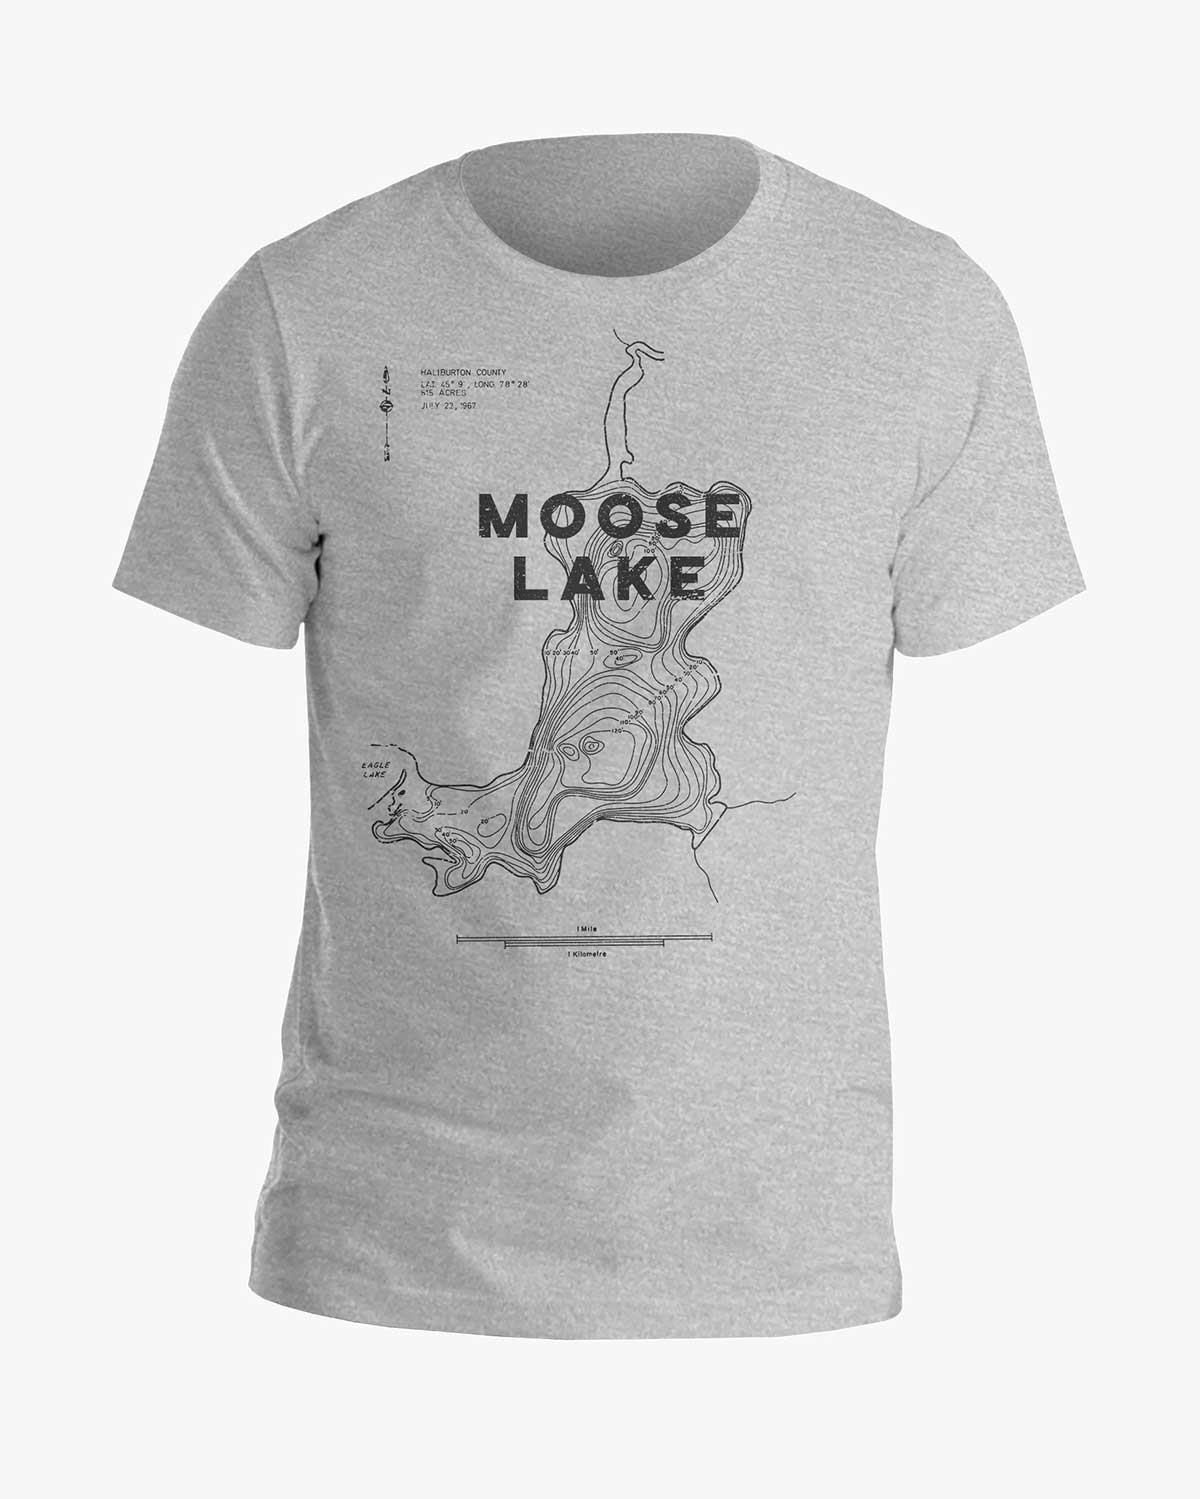 Lake Contours - Moose Lake - Tee